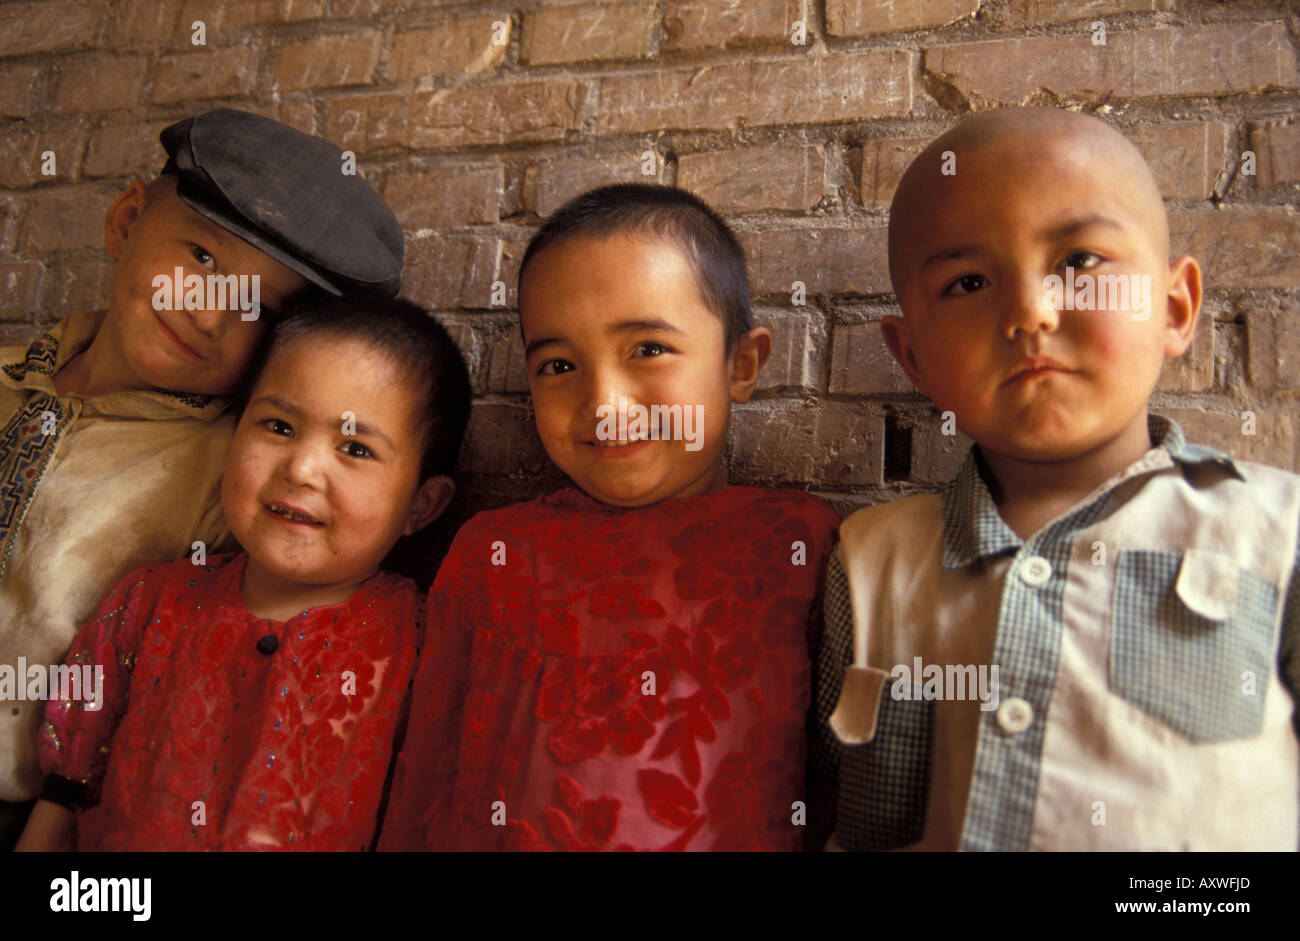 Uighur children Kashgar Xinjiang China Stock Photo